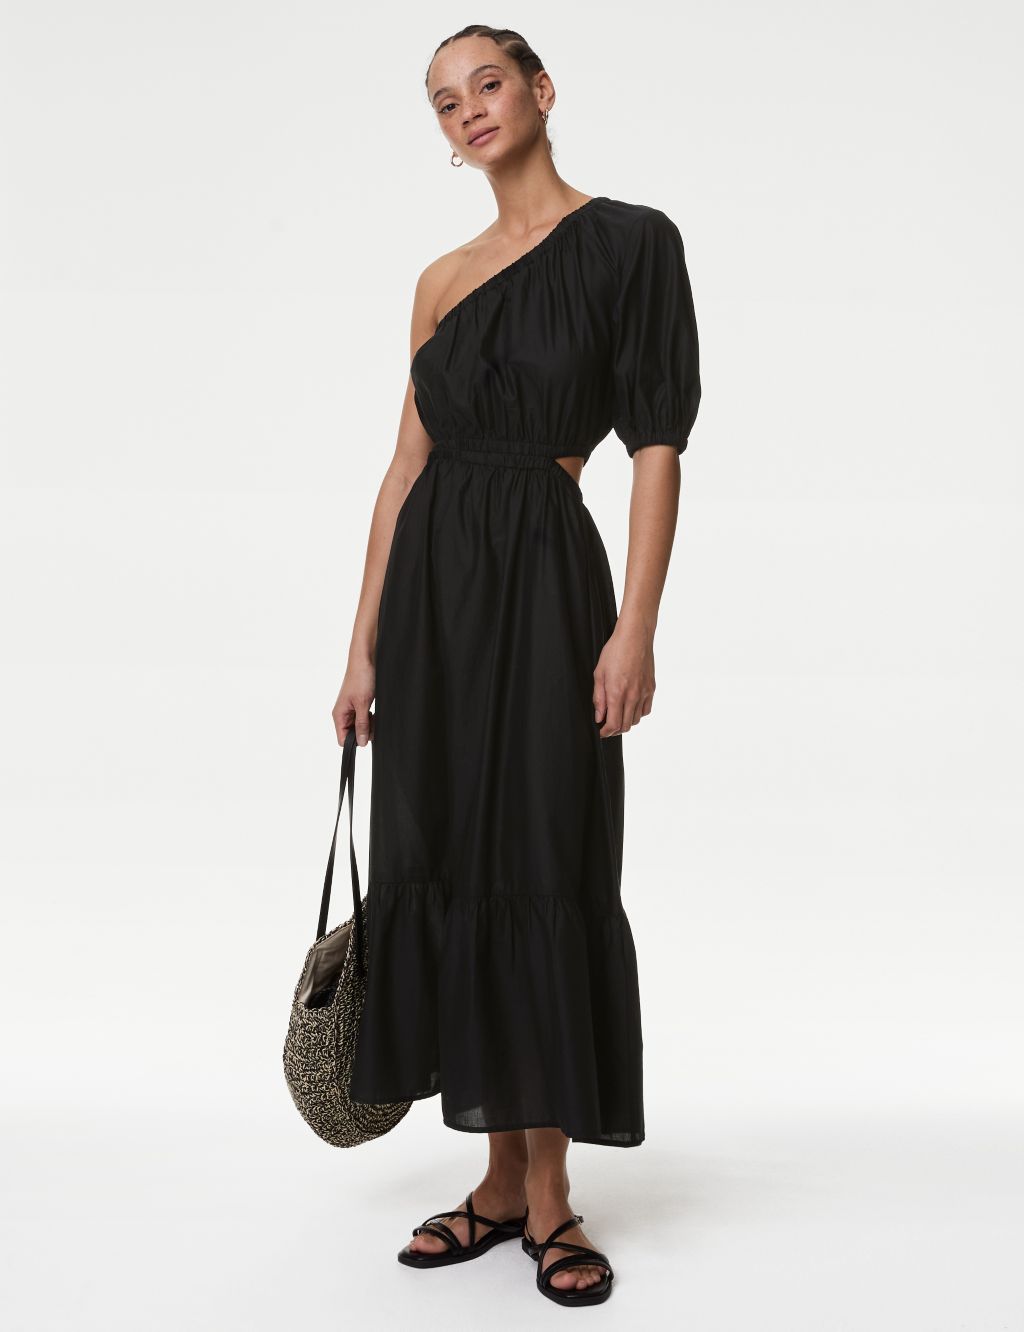 M&S Womens Pure Cotton One Shoulder Beach Dress - 24 - Black